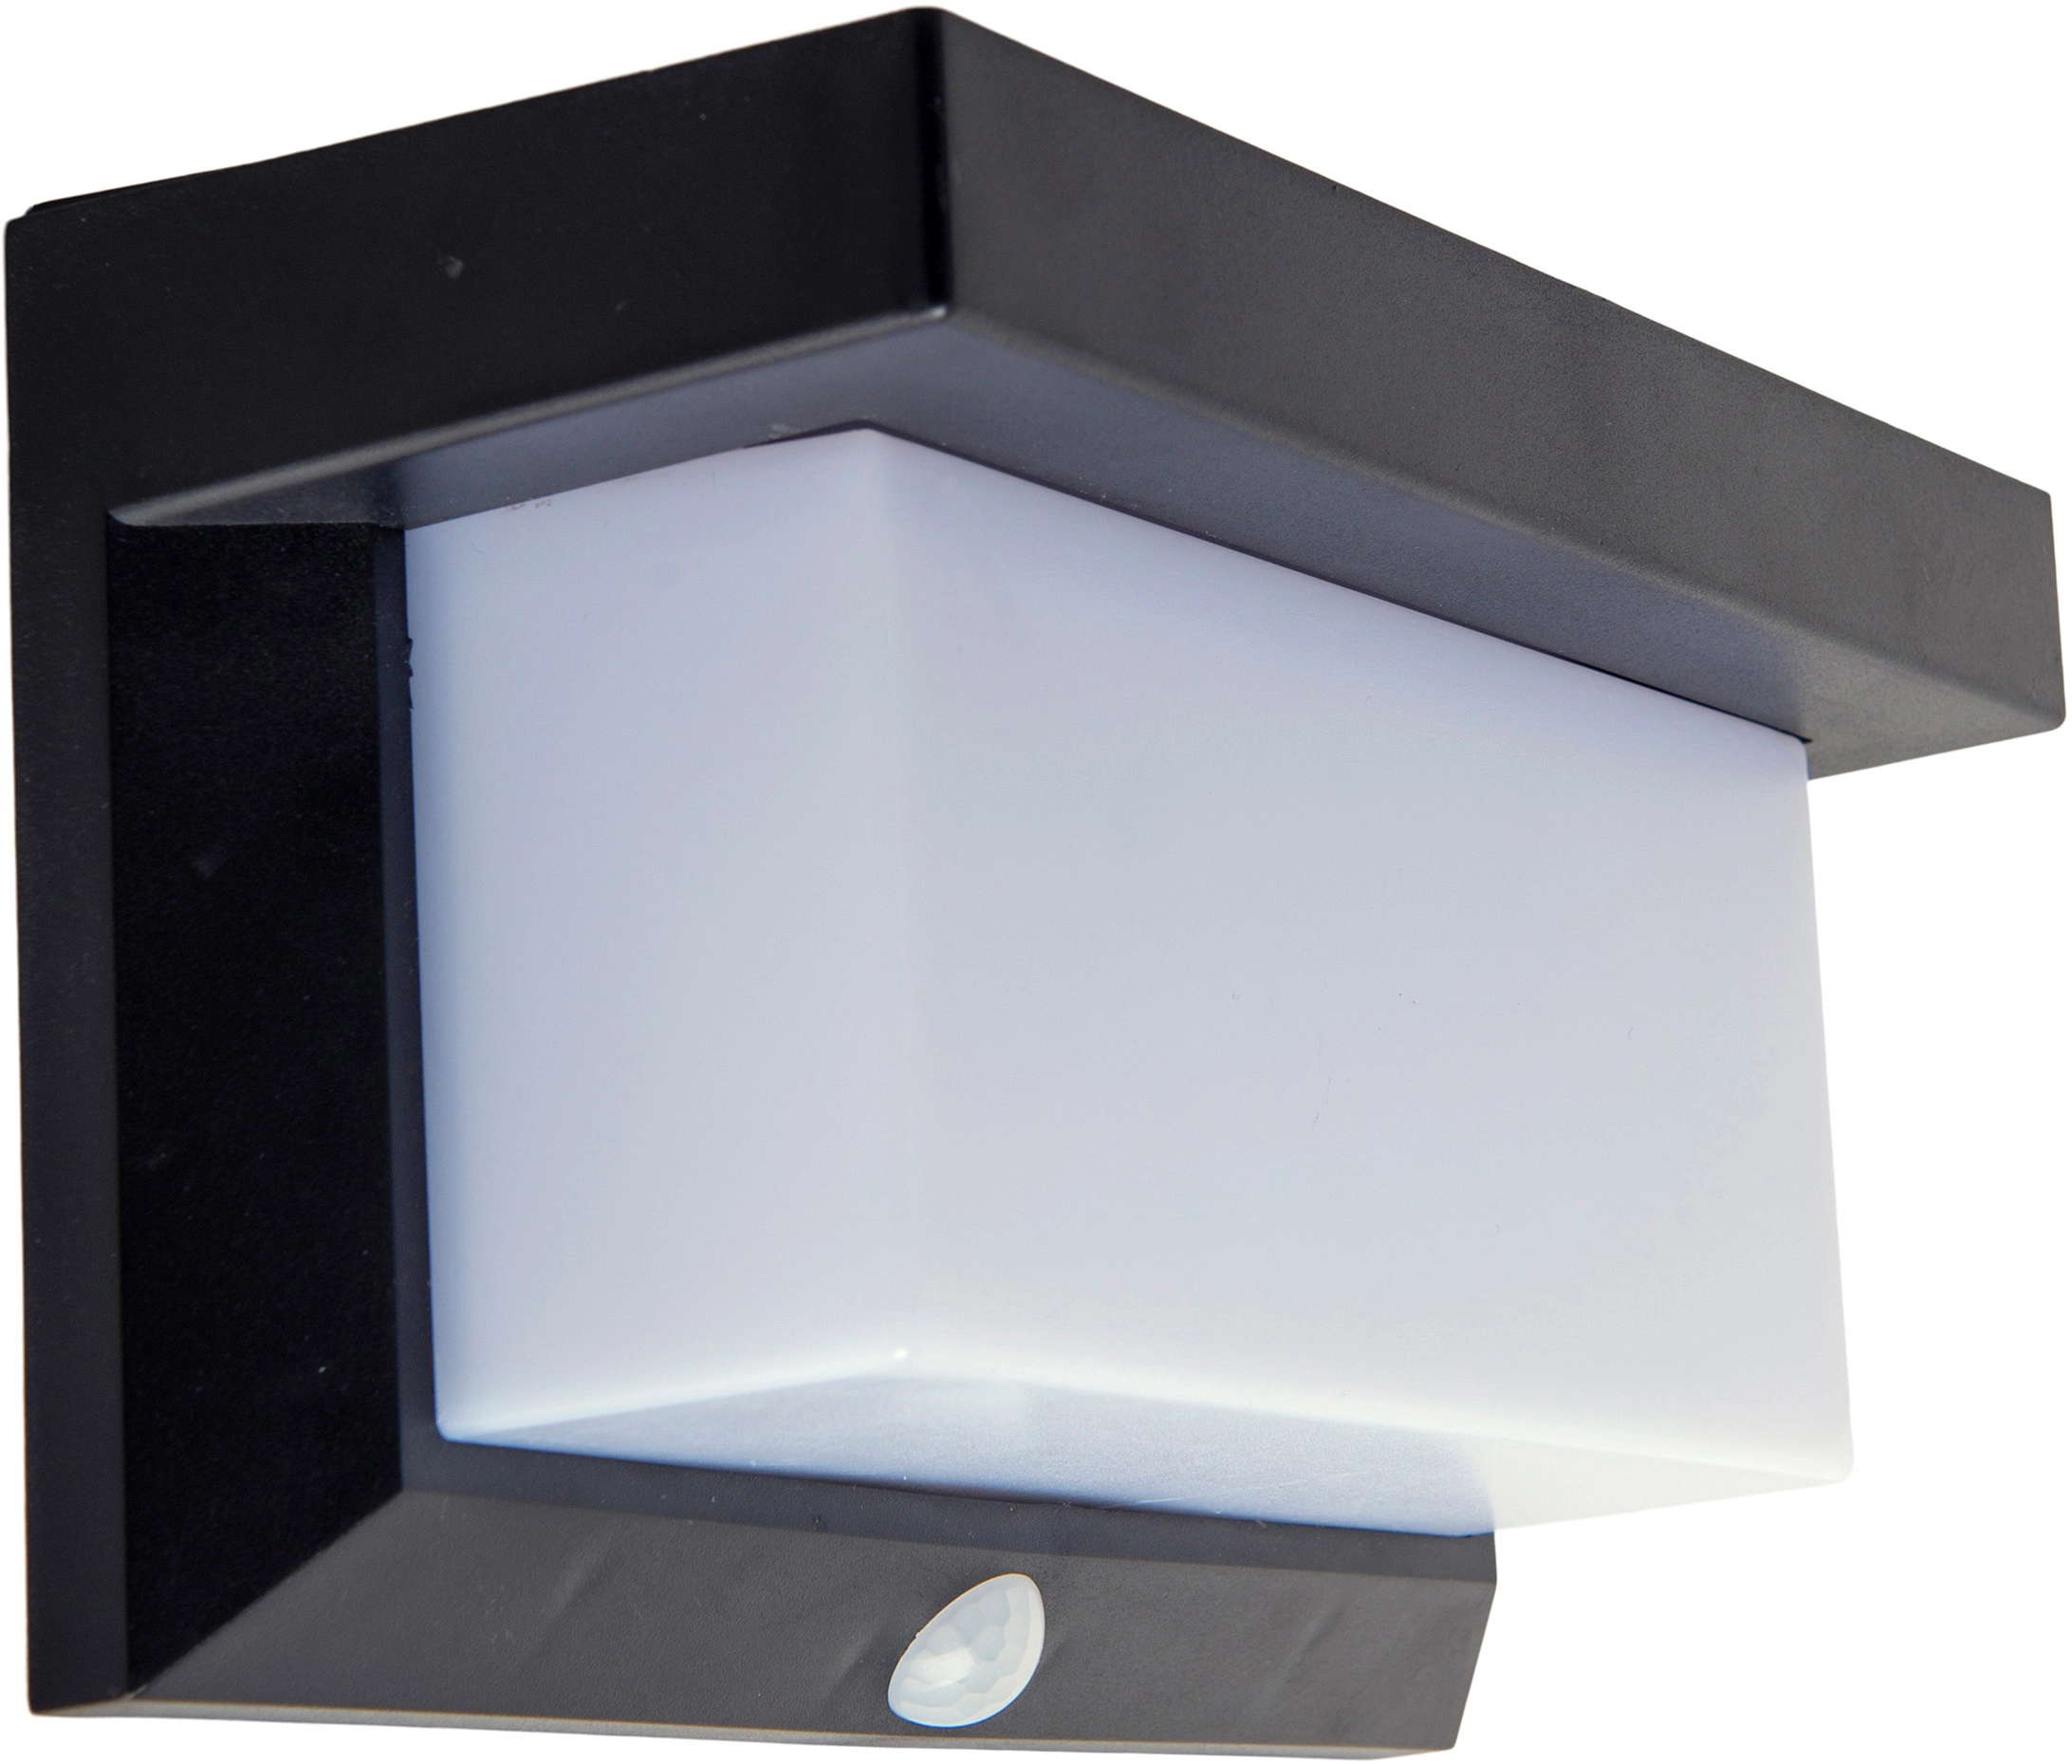 Näve LED-Solar-Außenwandleuchte mit Bewegungsmelder Schwarz kaufen bei OBI cm 12